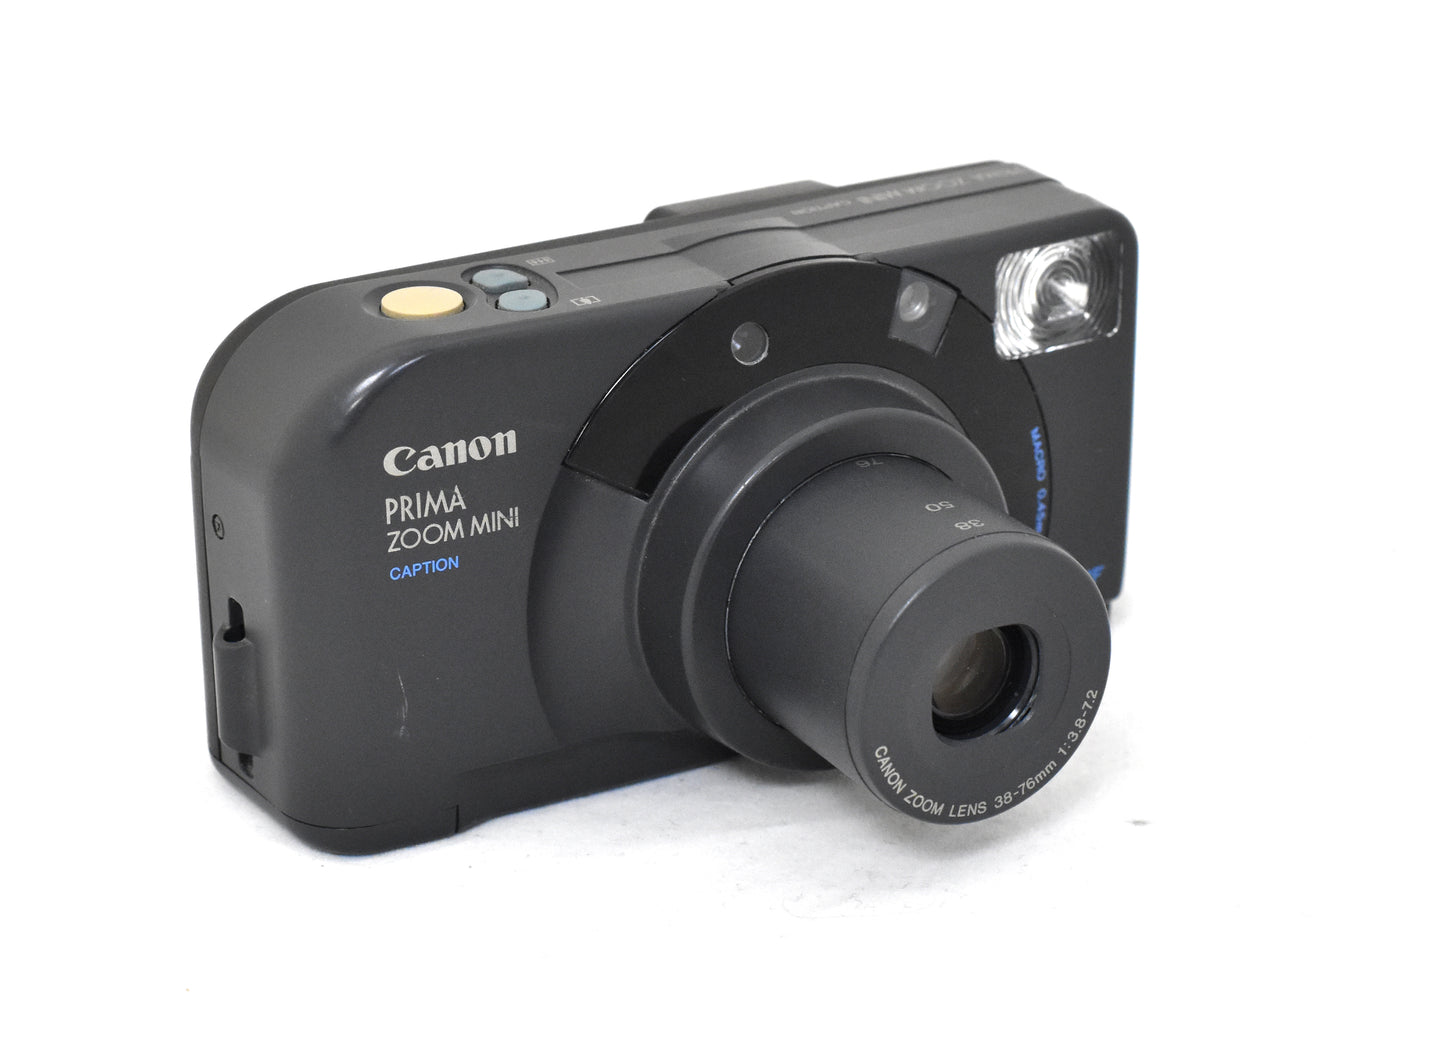 Canon Prima Zoom Mini